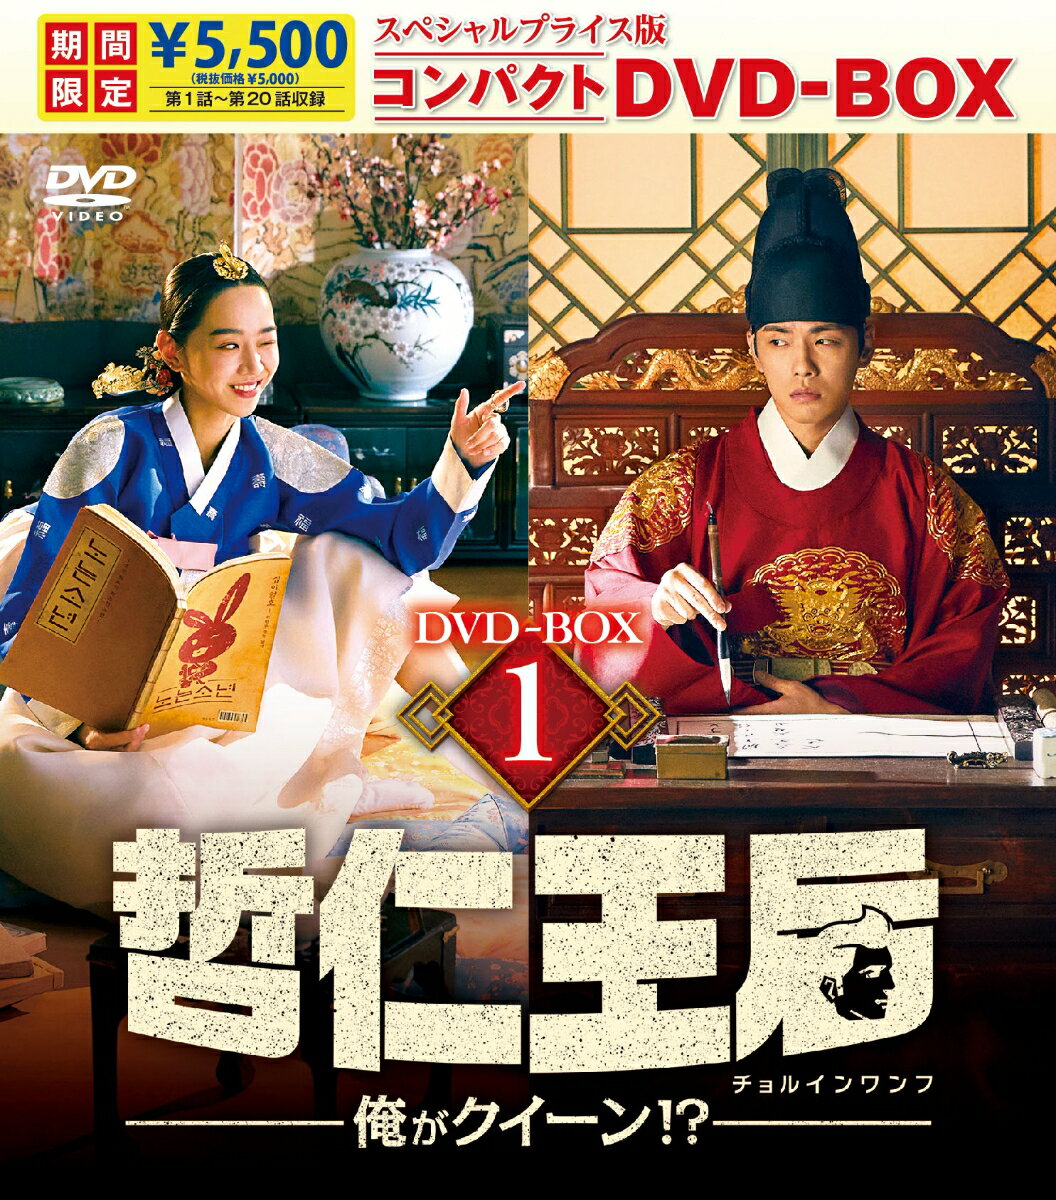 デュエル〜愛しき者たち〜 DVD-BOX2 [DVD]